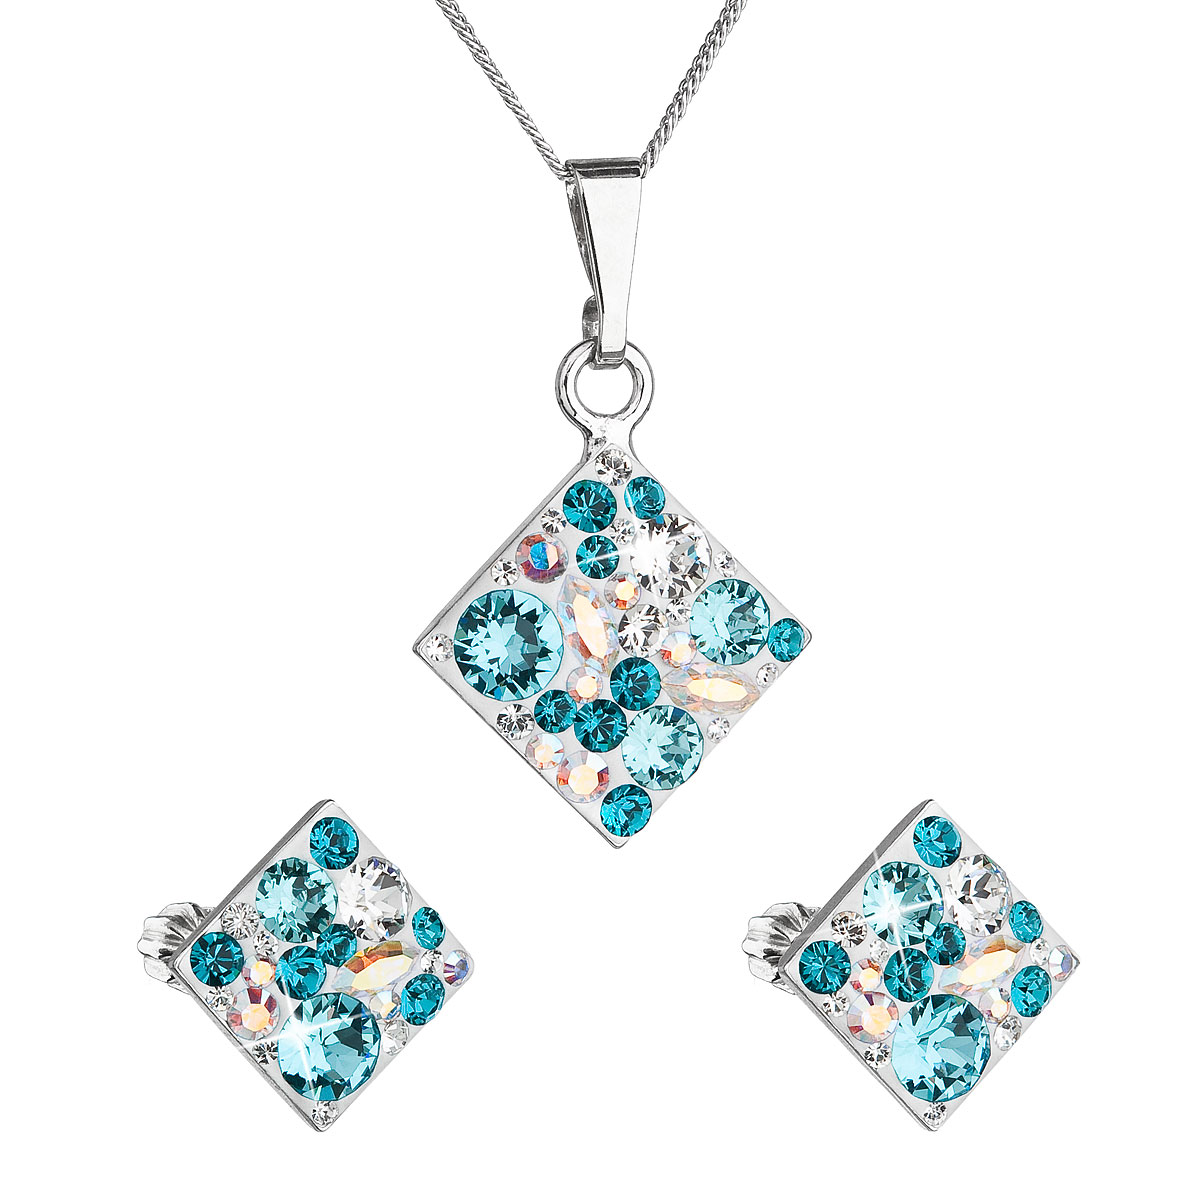 Evolution Group Sada šperků s krystaly Swarovski náušnice, řetízek a přívěsek modrý kosočtverec 39126.3 turquoise